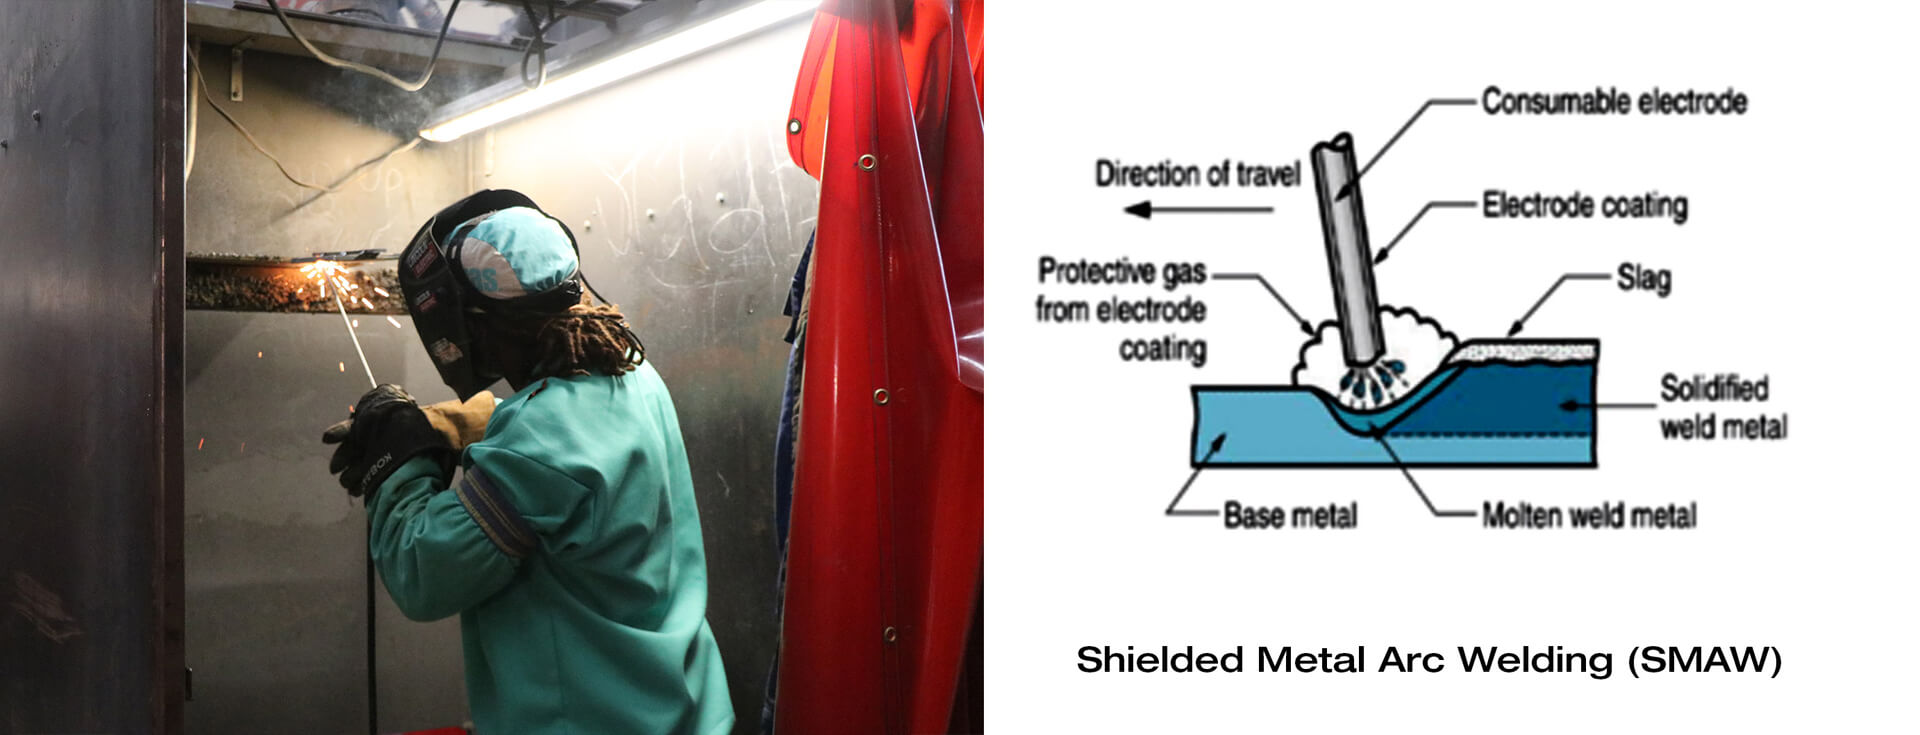 Type of Welding technology - Shielded Metal Arc welding